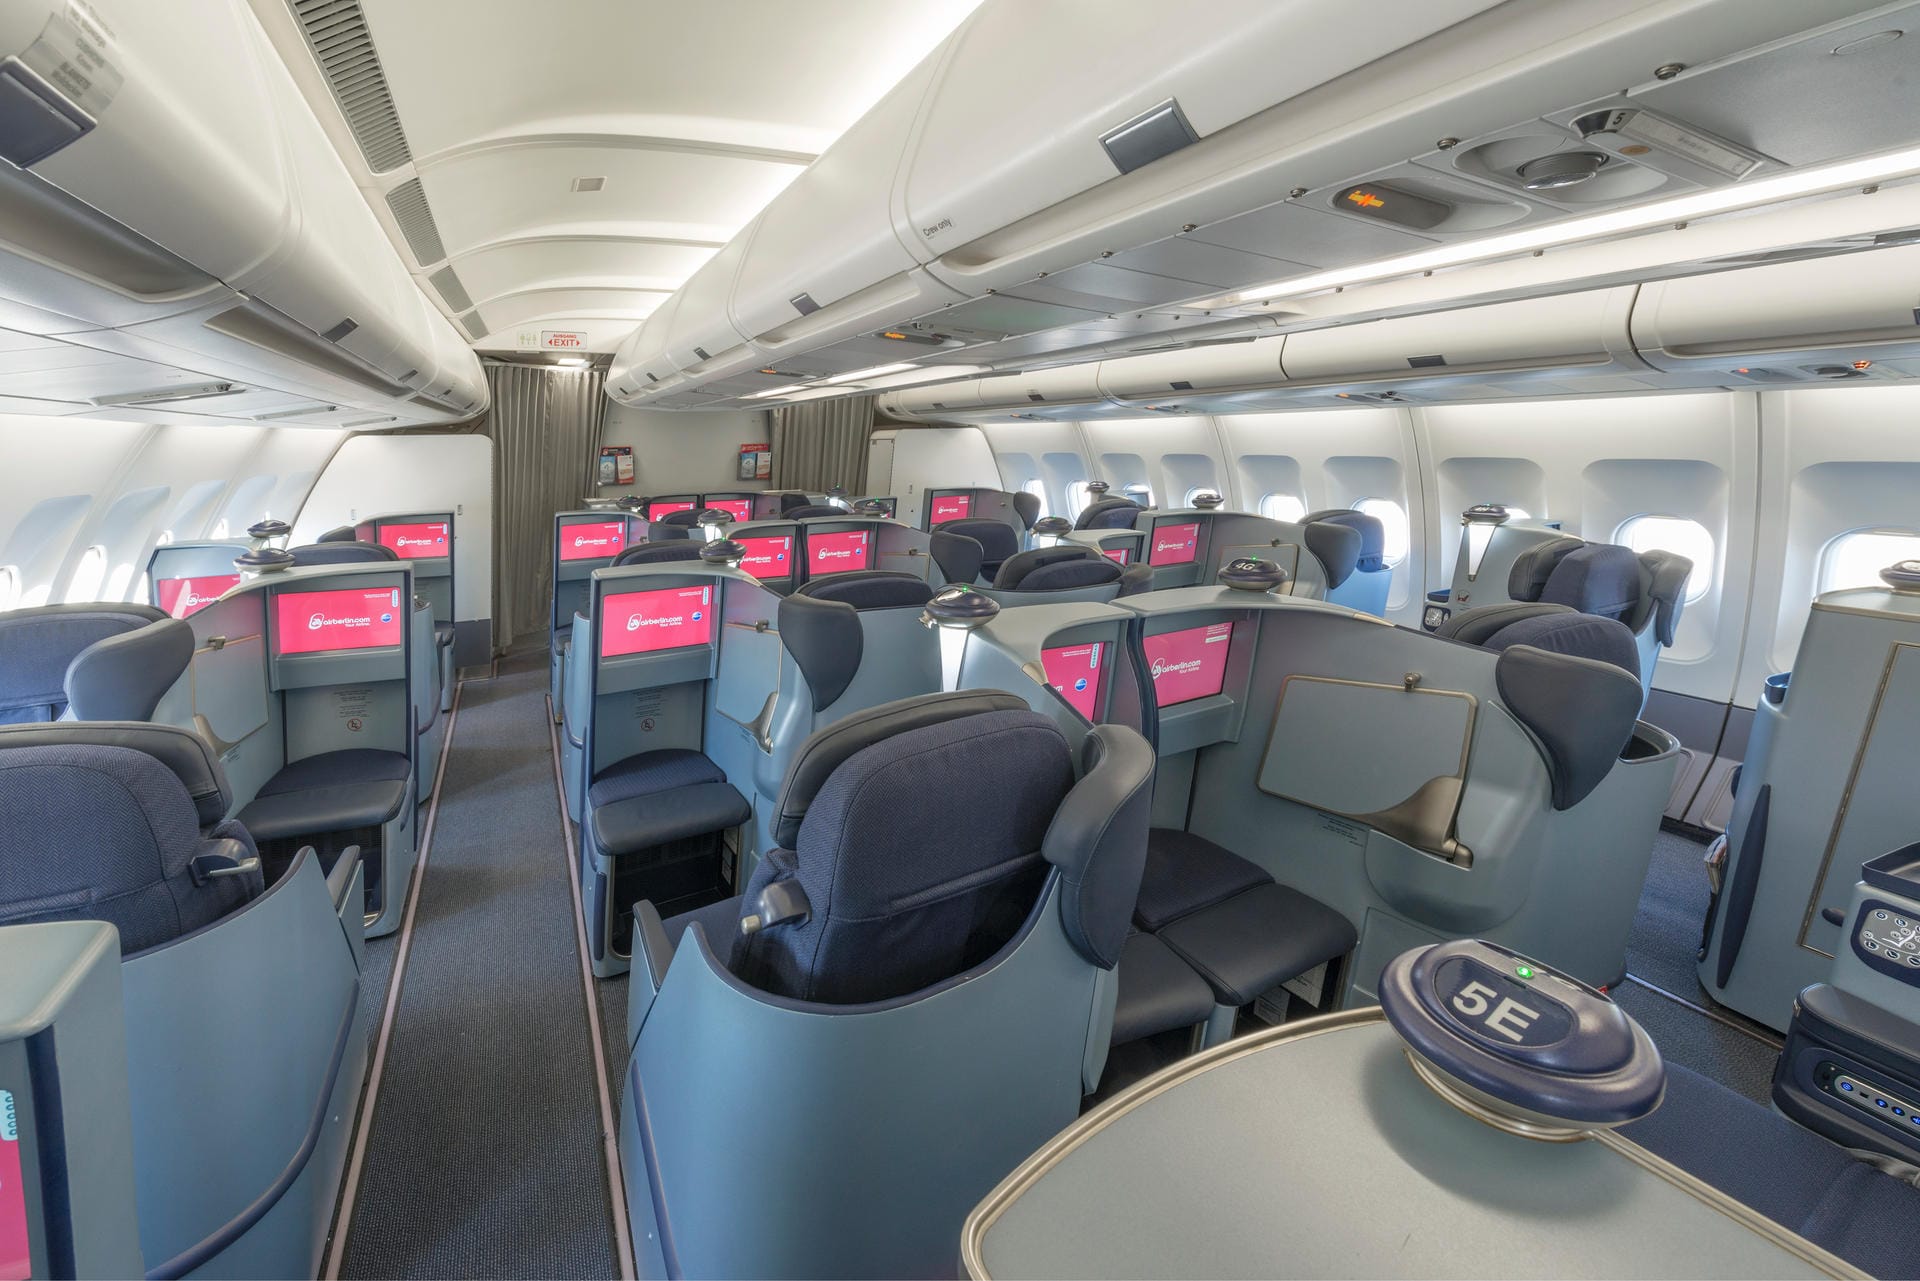 Auch bei Air Berlin lassen sich die Business-Class-Sitze zur Liegefläche umfunktionieren. Preise für Hin- und Rückflug nach Nordamerika starten bei etwa 1500 Euro.